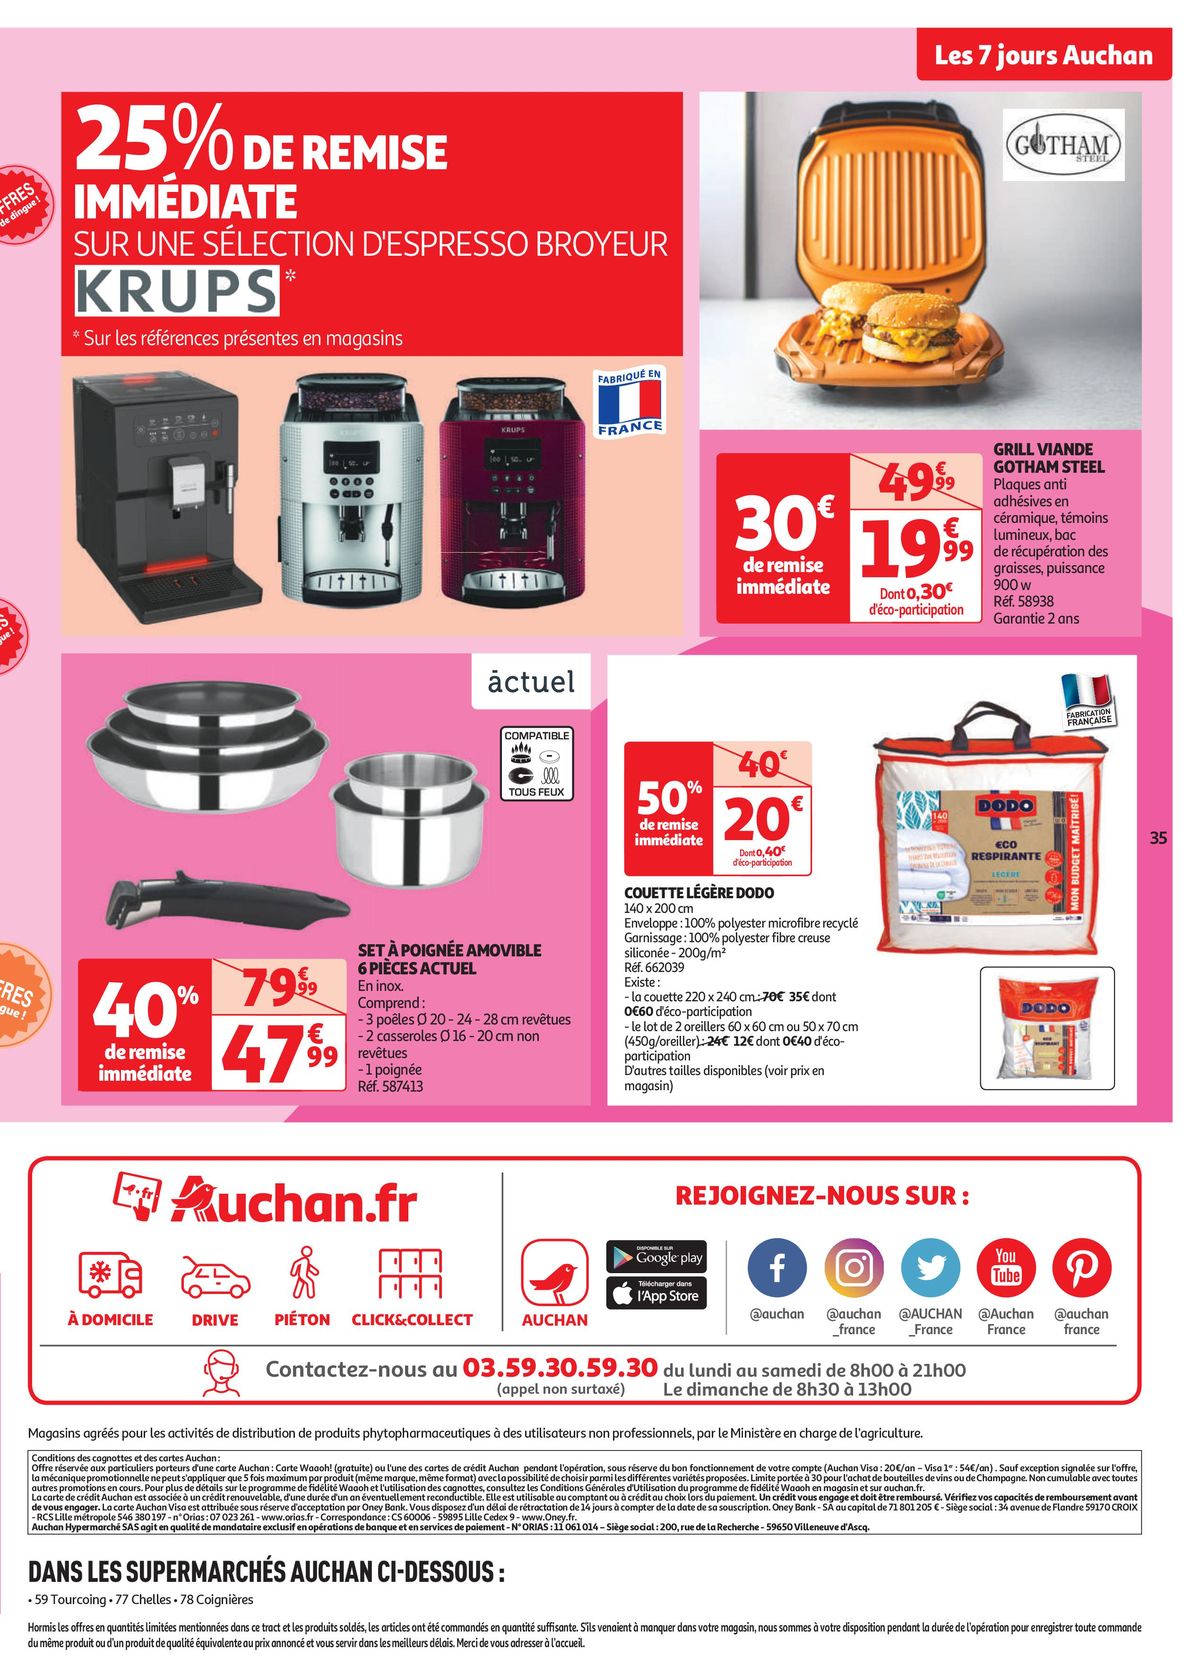 Catalogue Les 7 jours Auchan, c'est maintenant !, page 00035